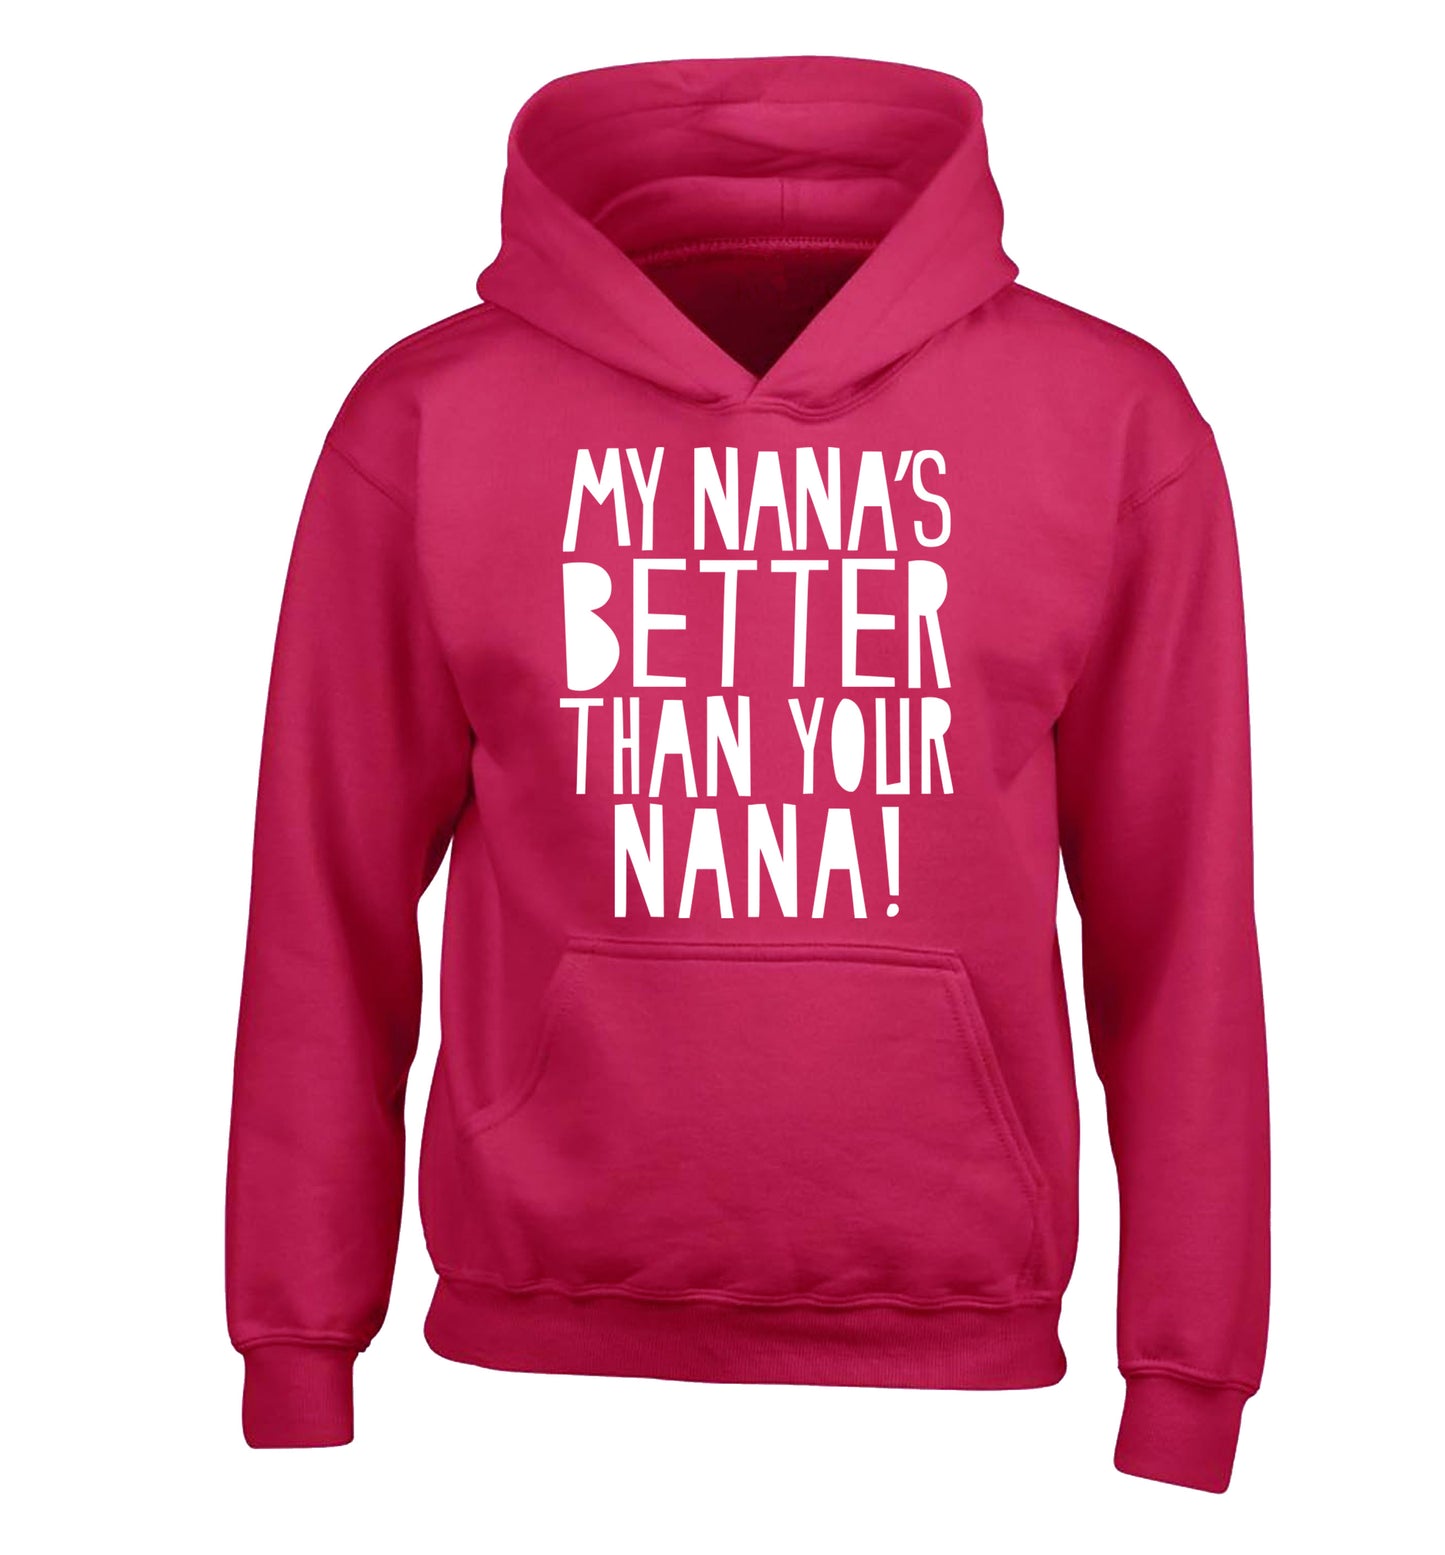 My nana's better than your nana children's pink hoodie 12-13 Years